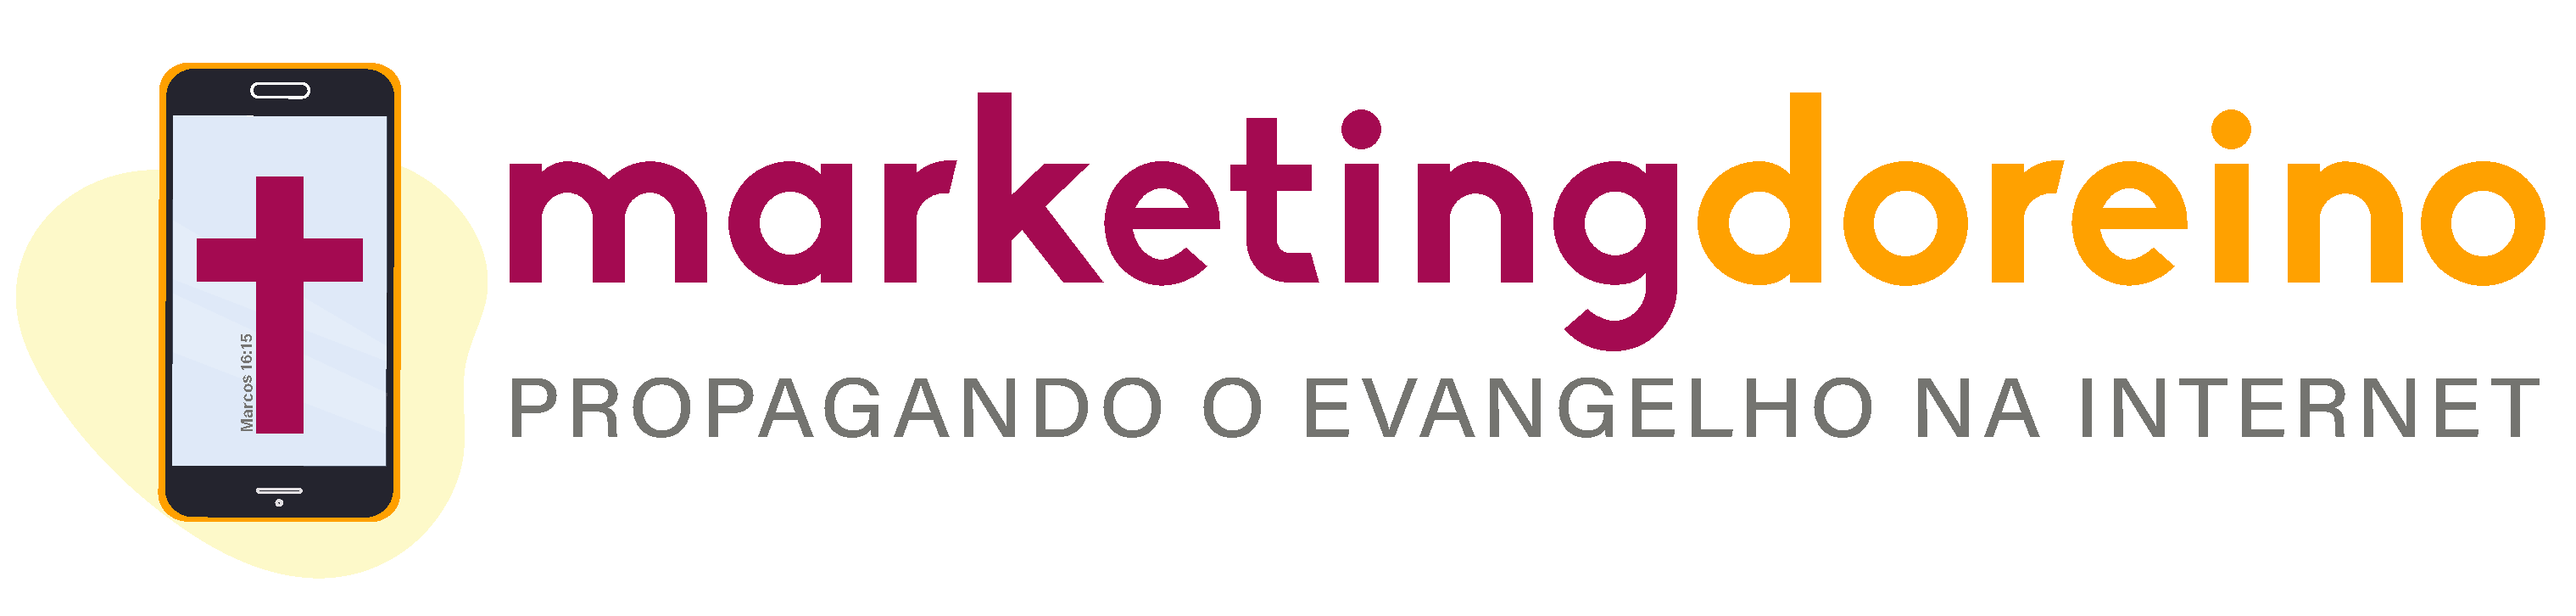 marketingdoreino.com